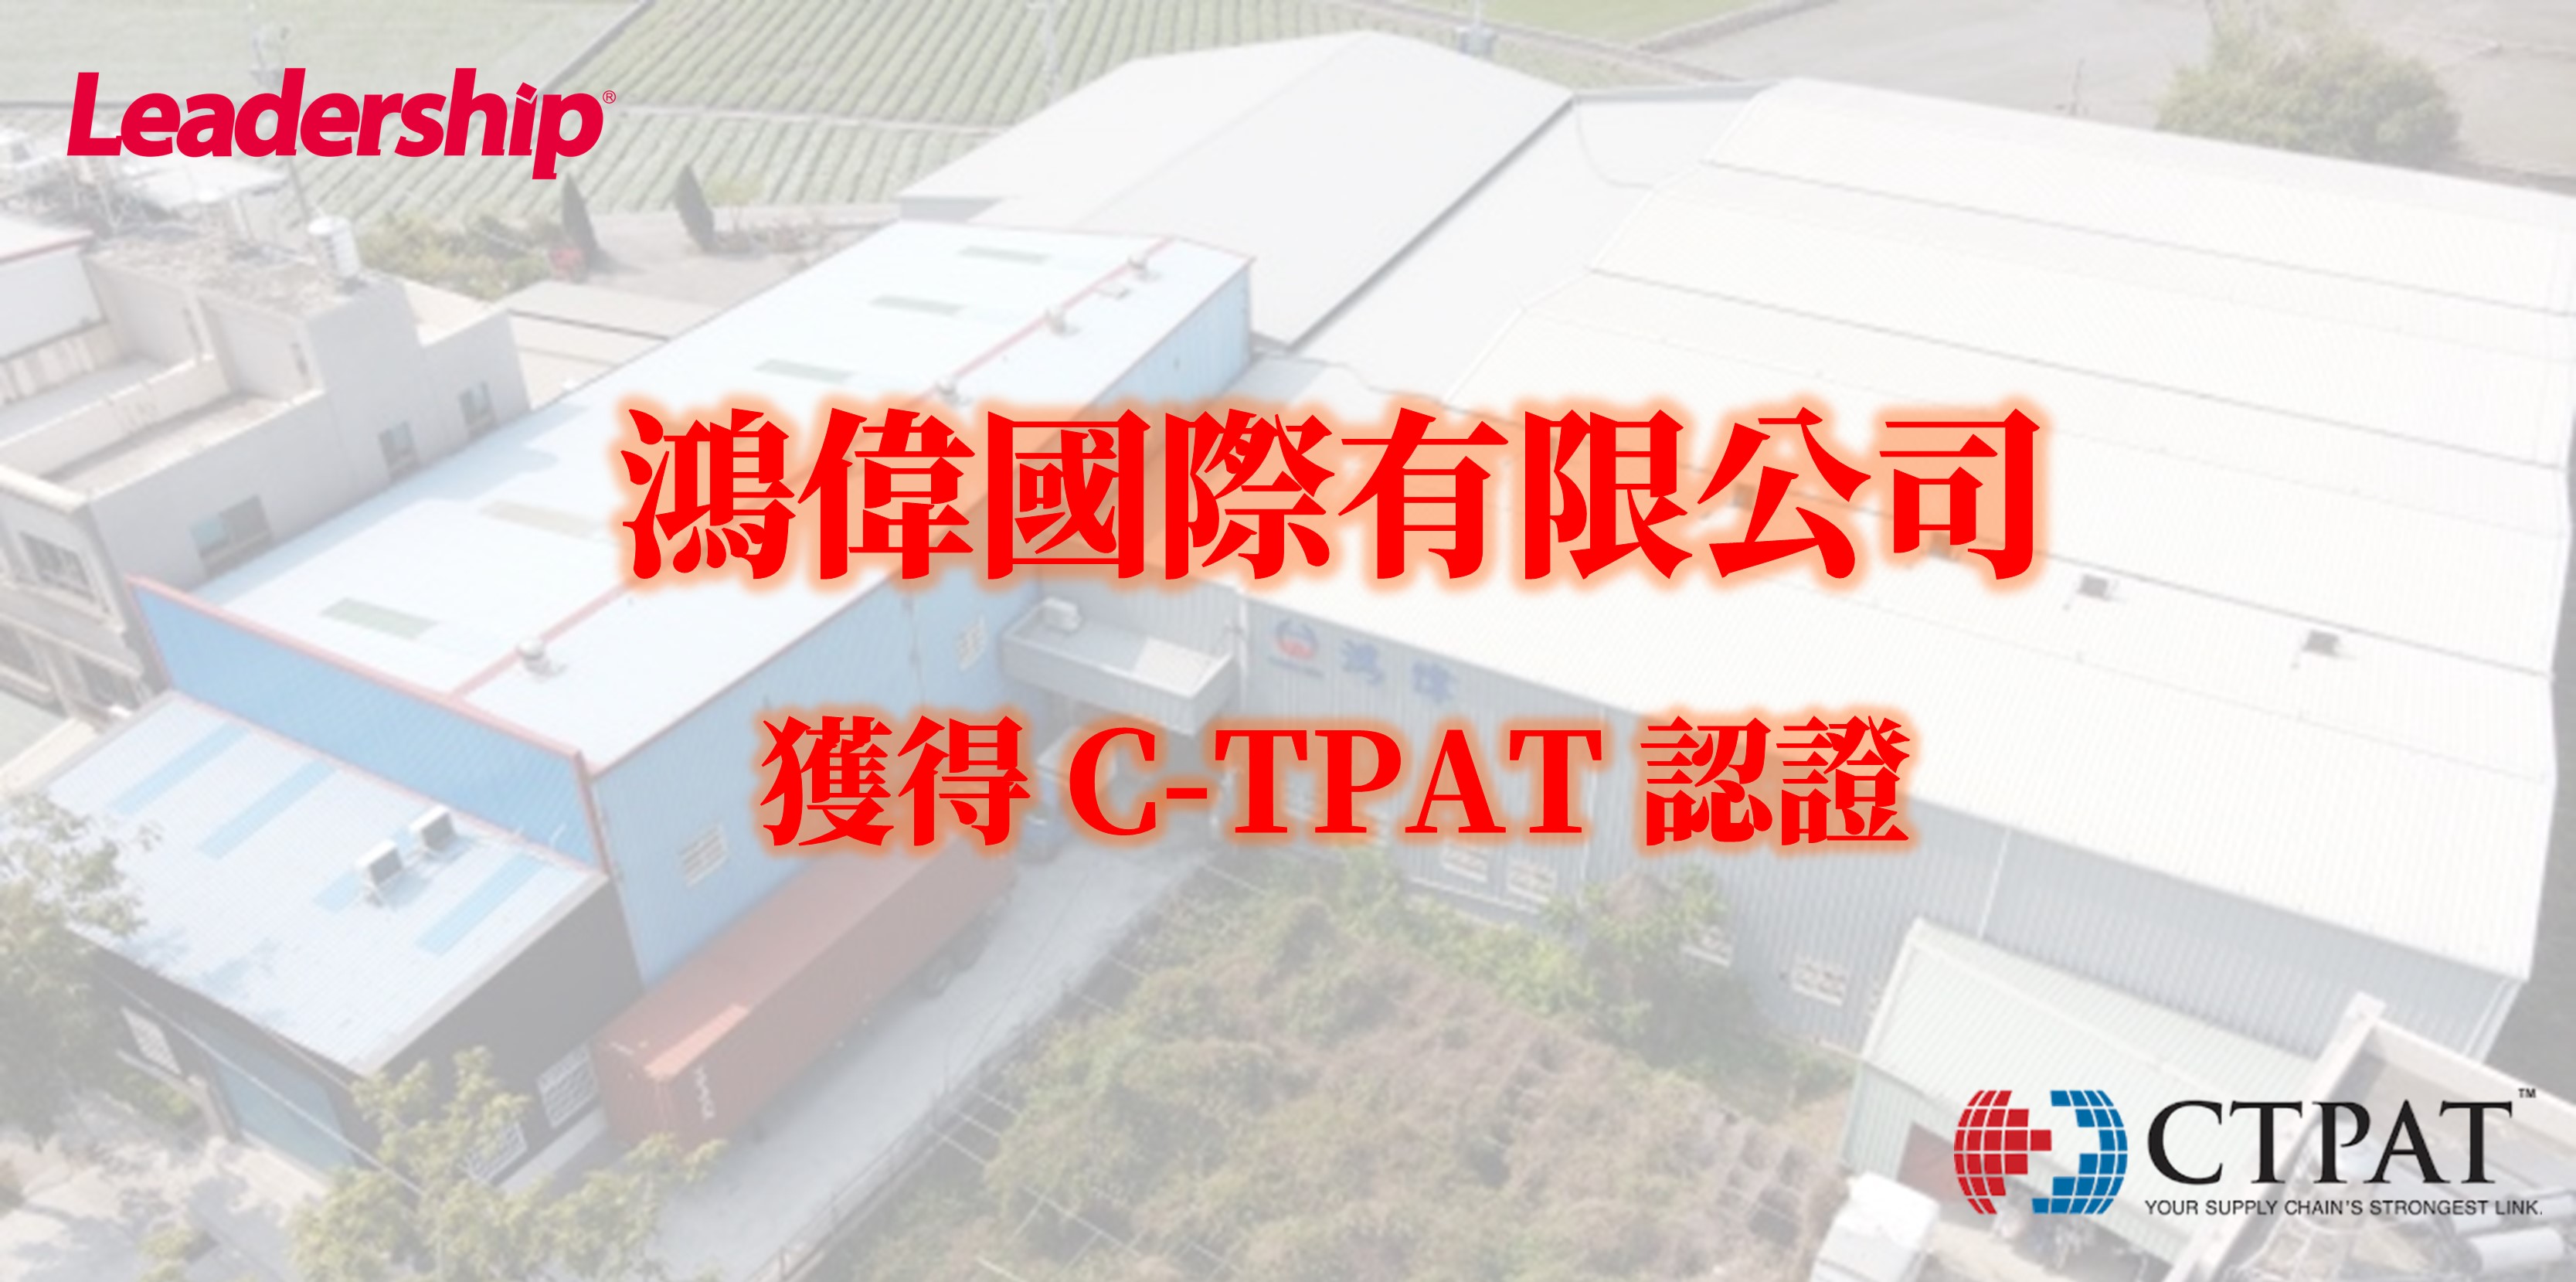 鴻偉國際有限公司獲得 C-TPAT 認證